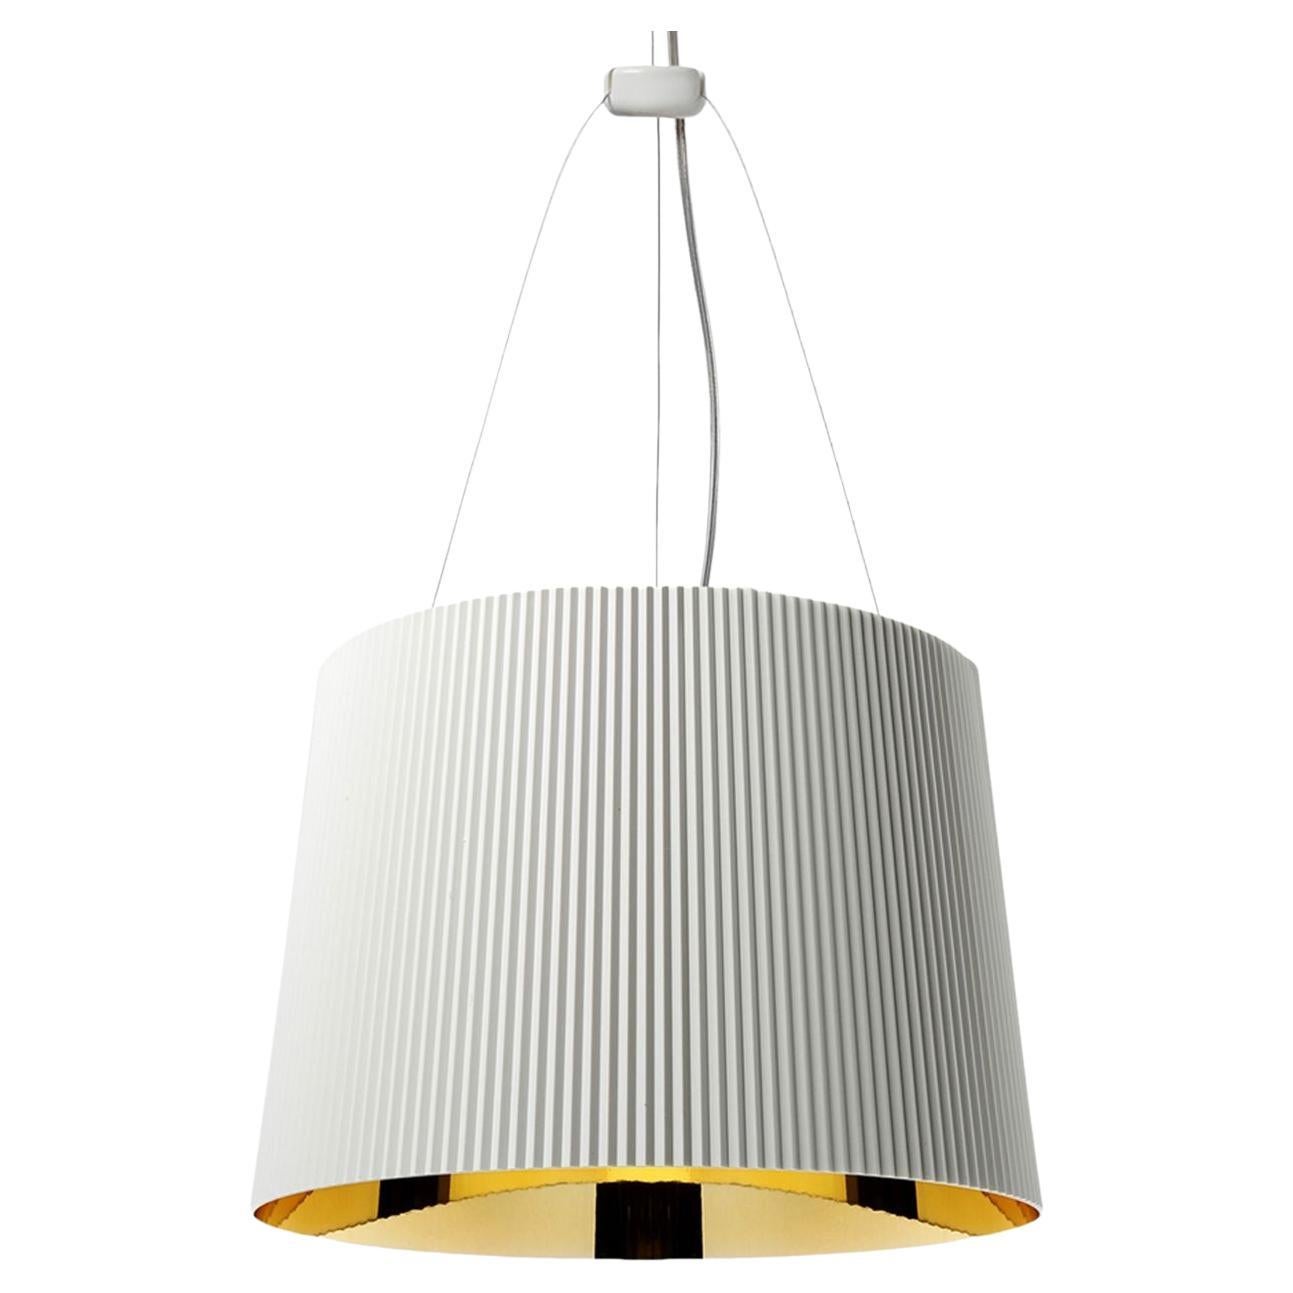 Ge' Suspension Lamp in White Golden by Ferruccio Laviani For Sale